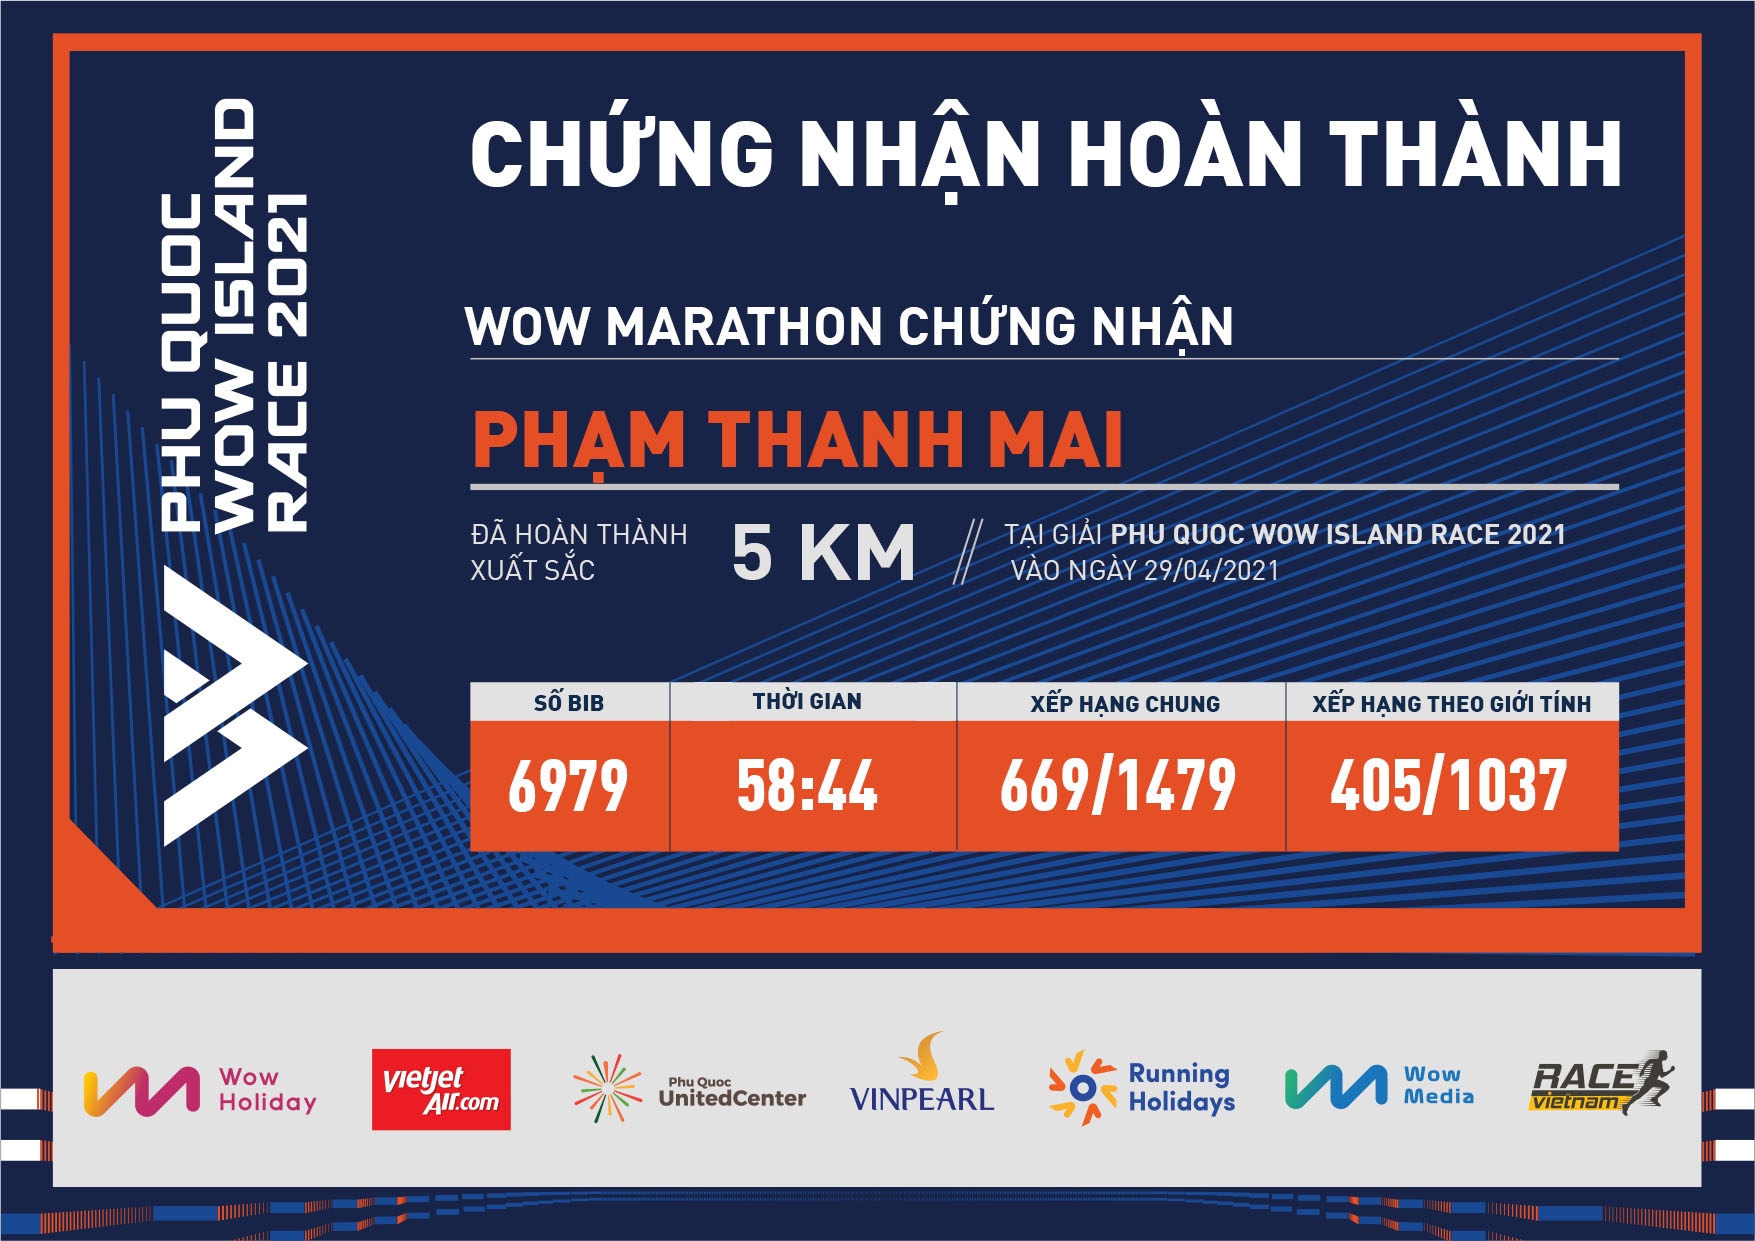 6979 - Phạm Thanh Mai